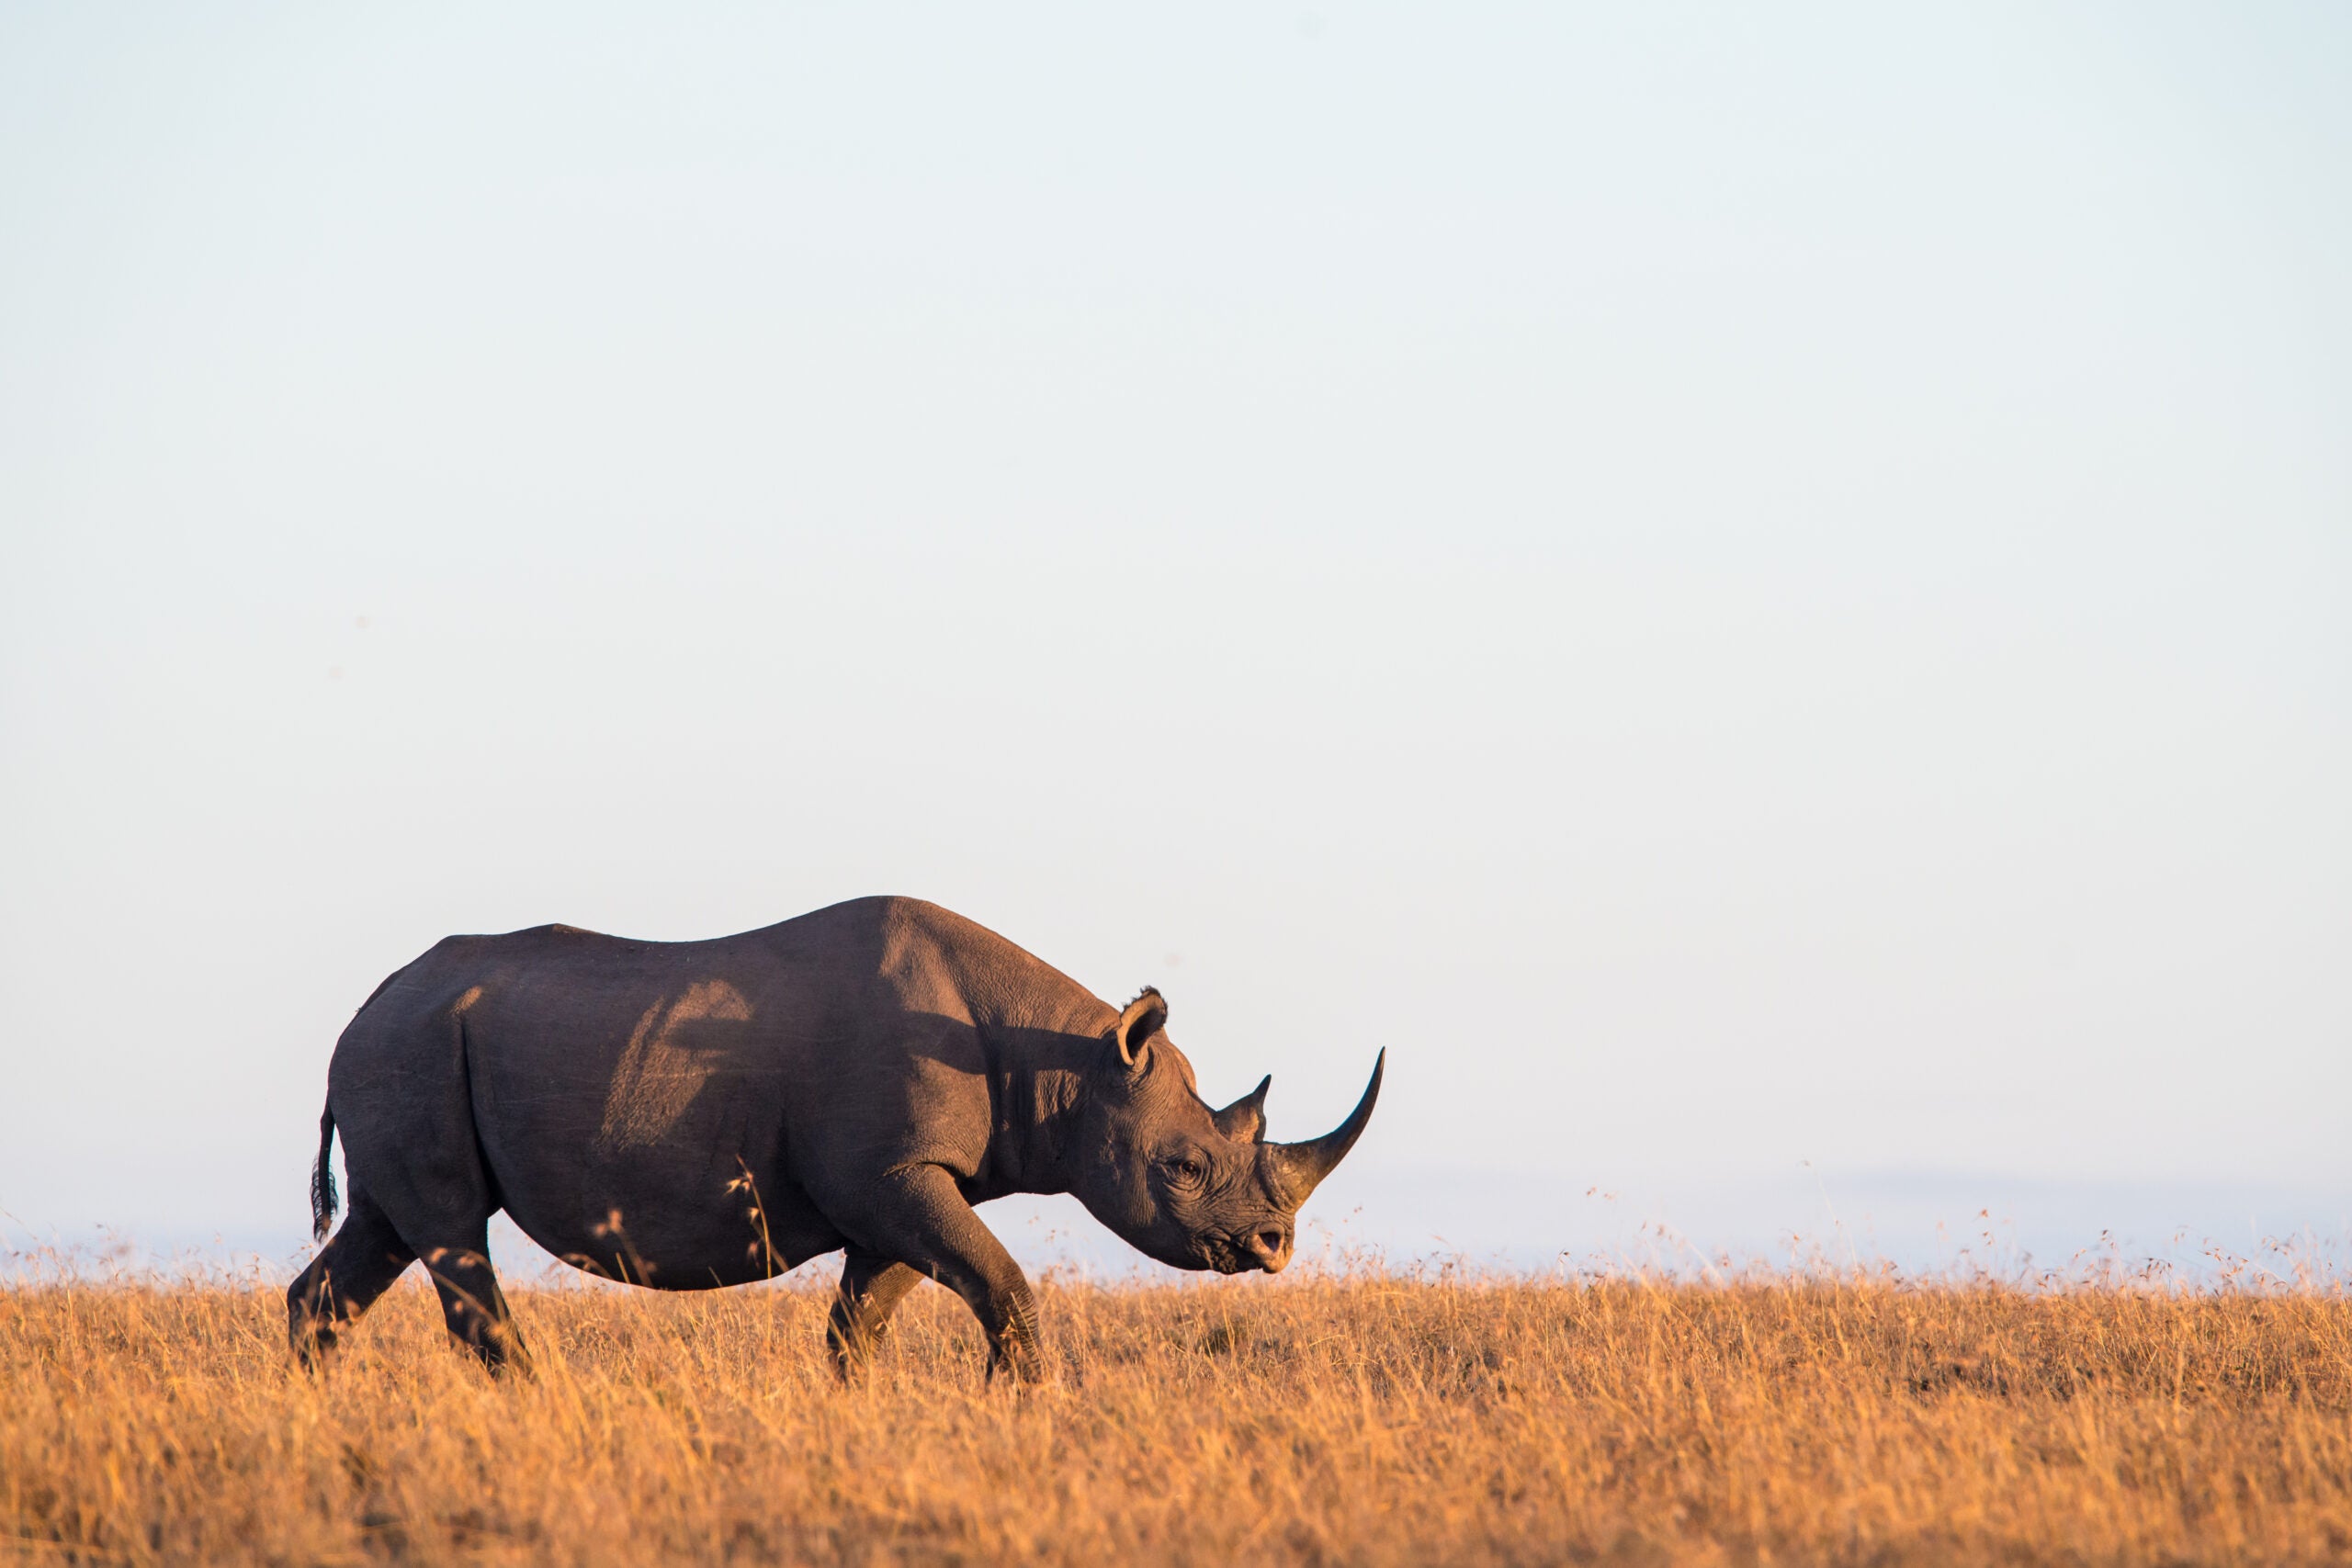 “Rhino Bond” Could Save Black Rhinos